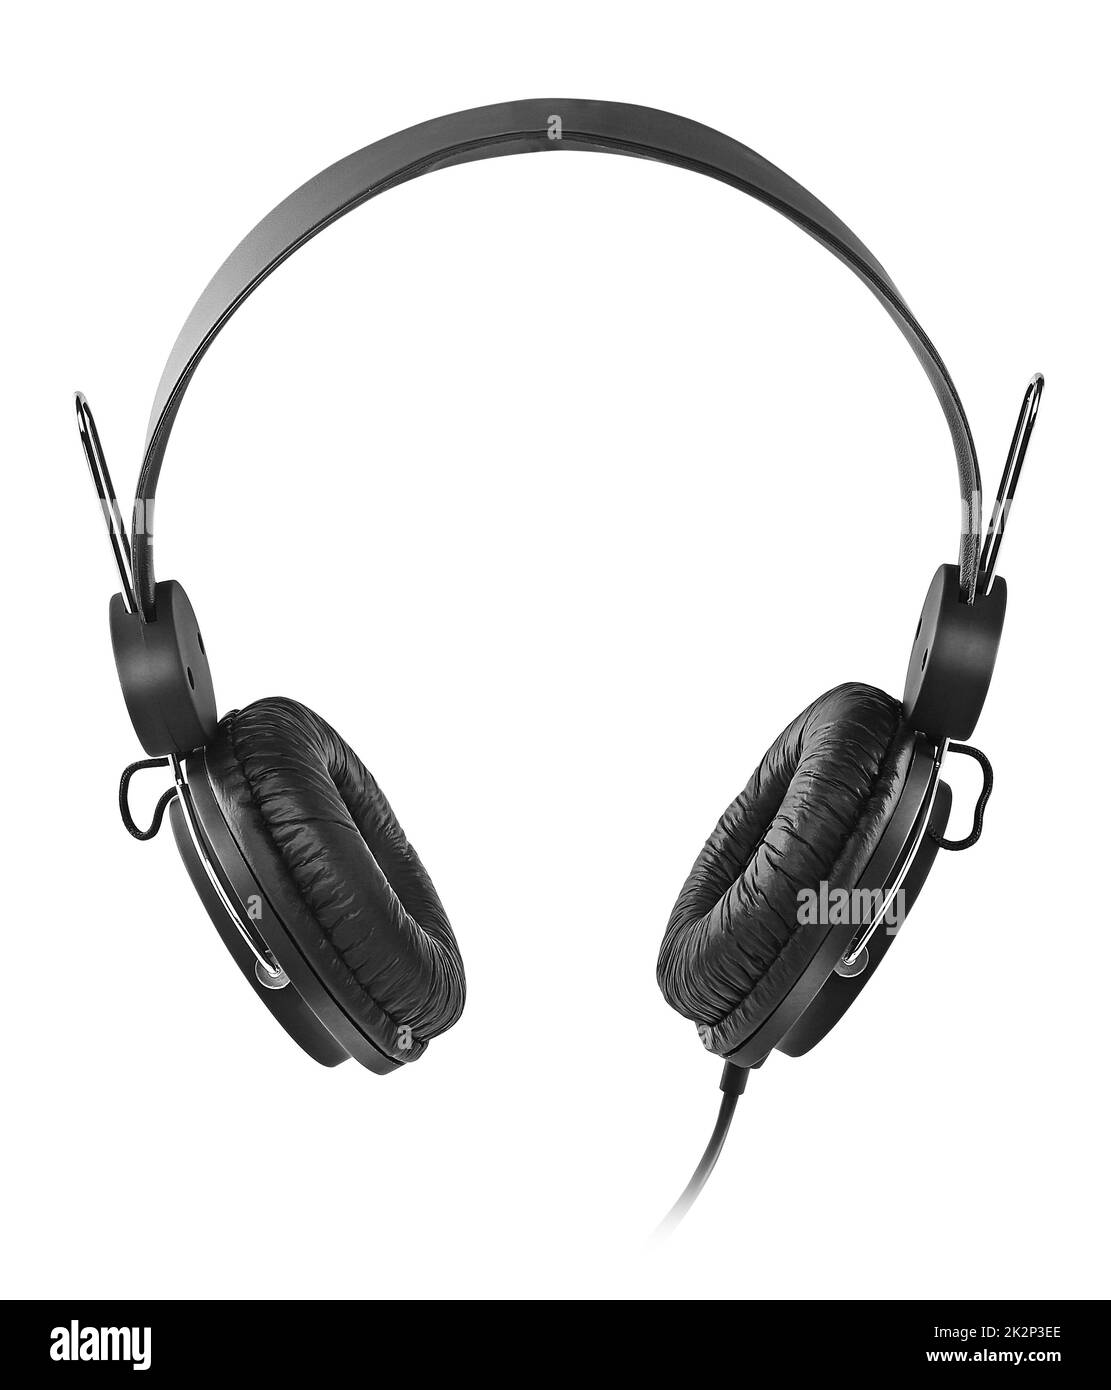 Black headphones over white Stock Photo